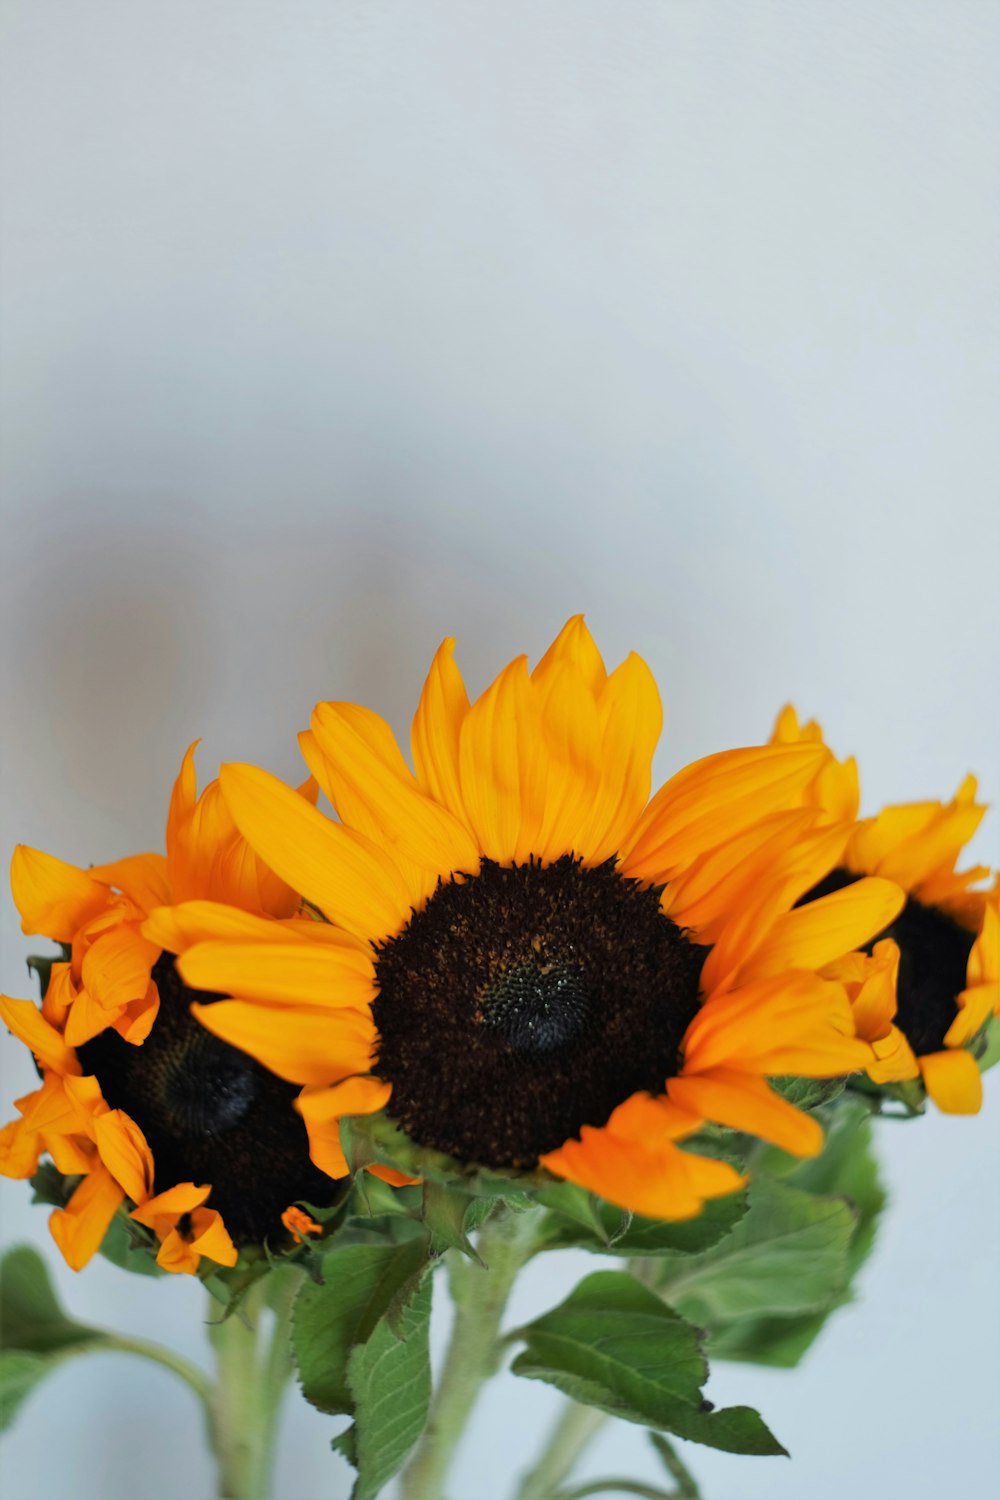 sunflower in tilt shift lens